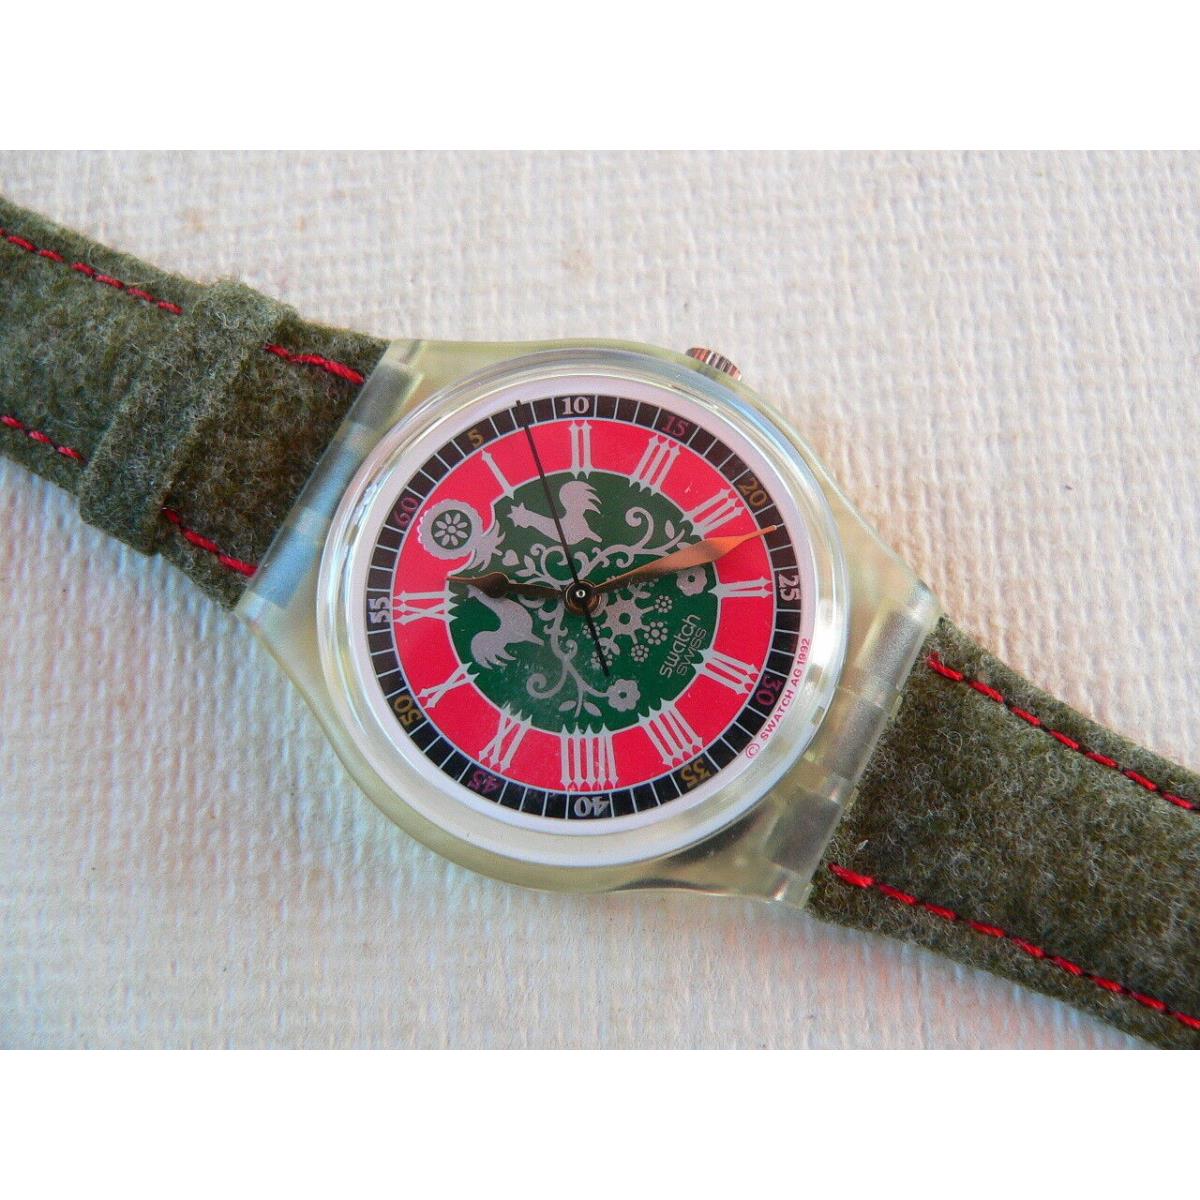 1993 Vintage Swatch Watch Loden GK167